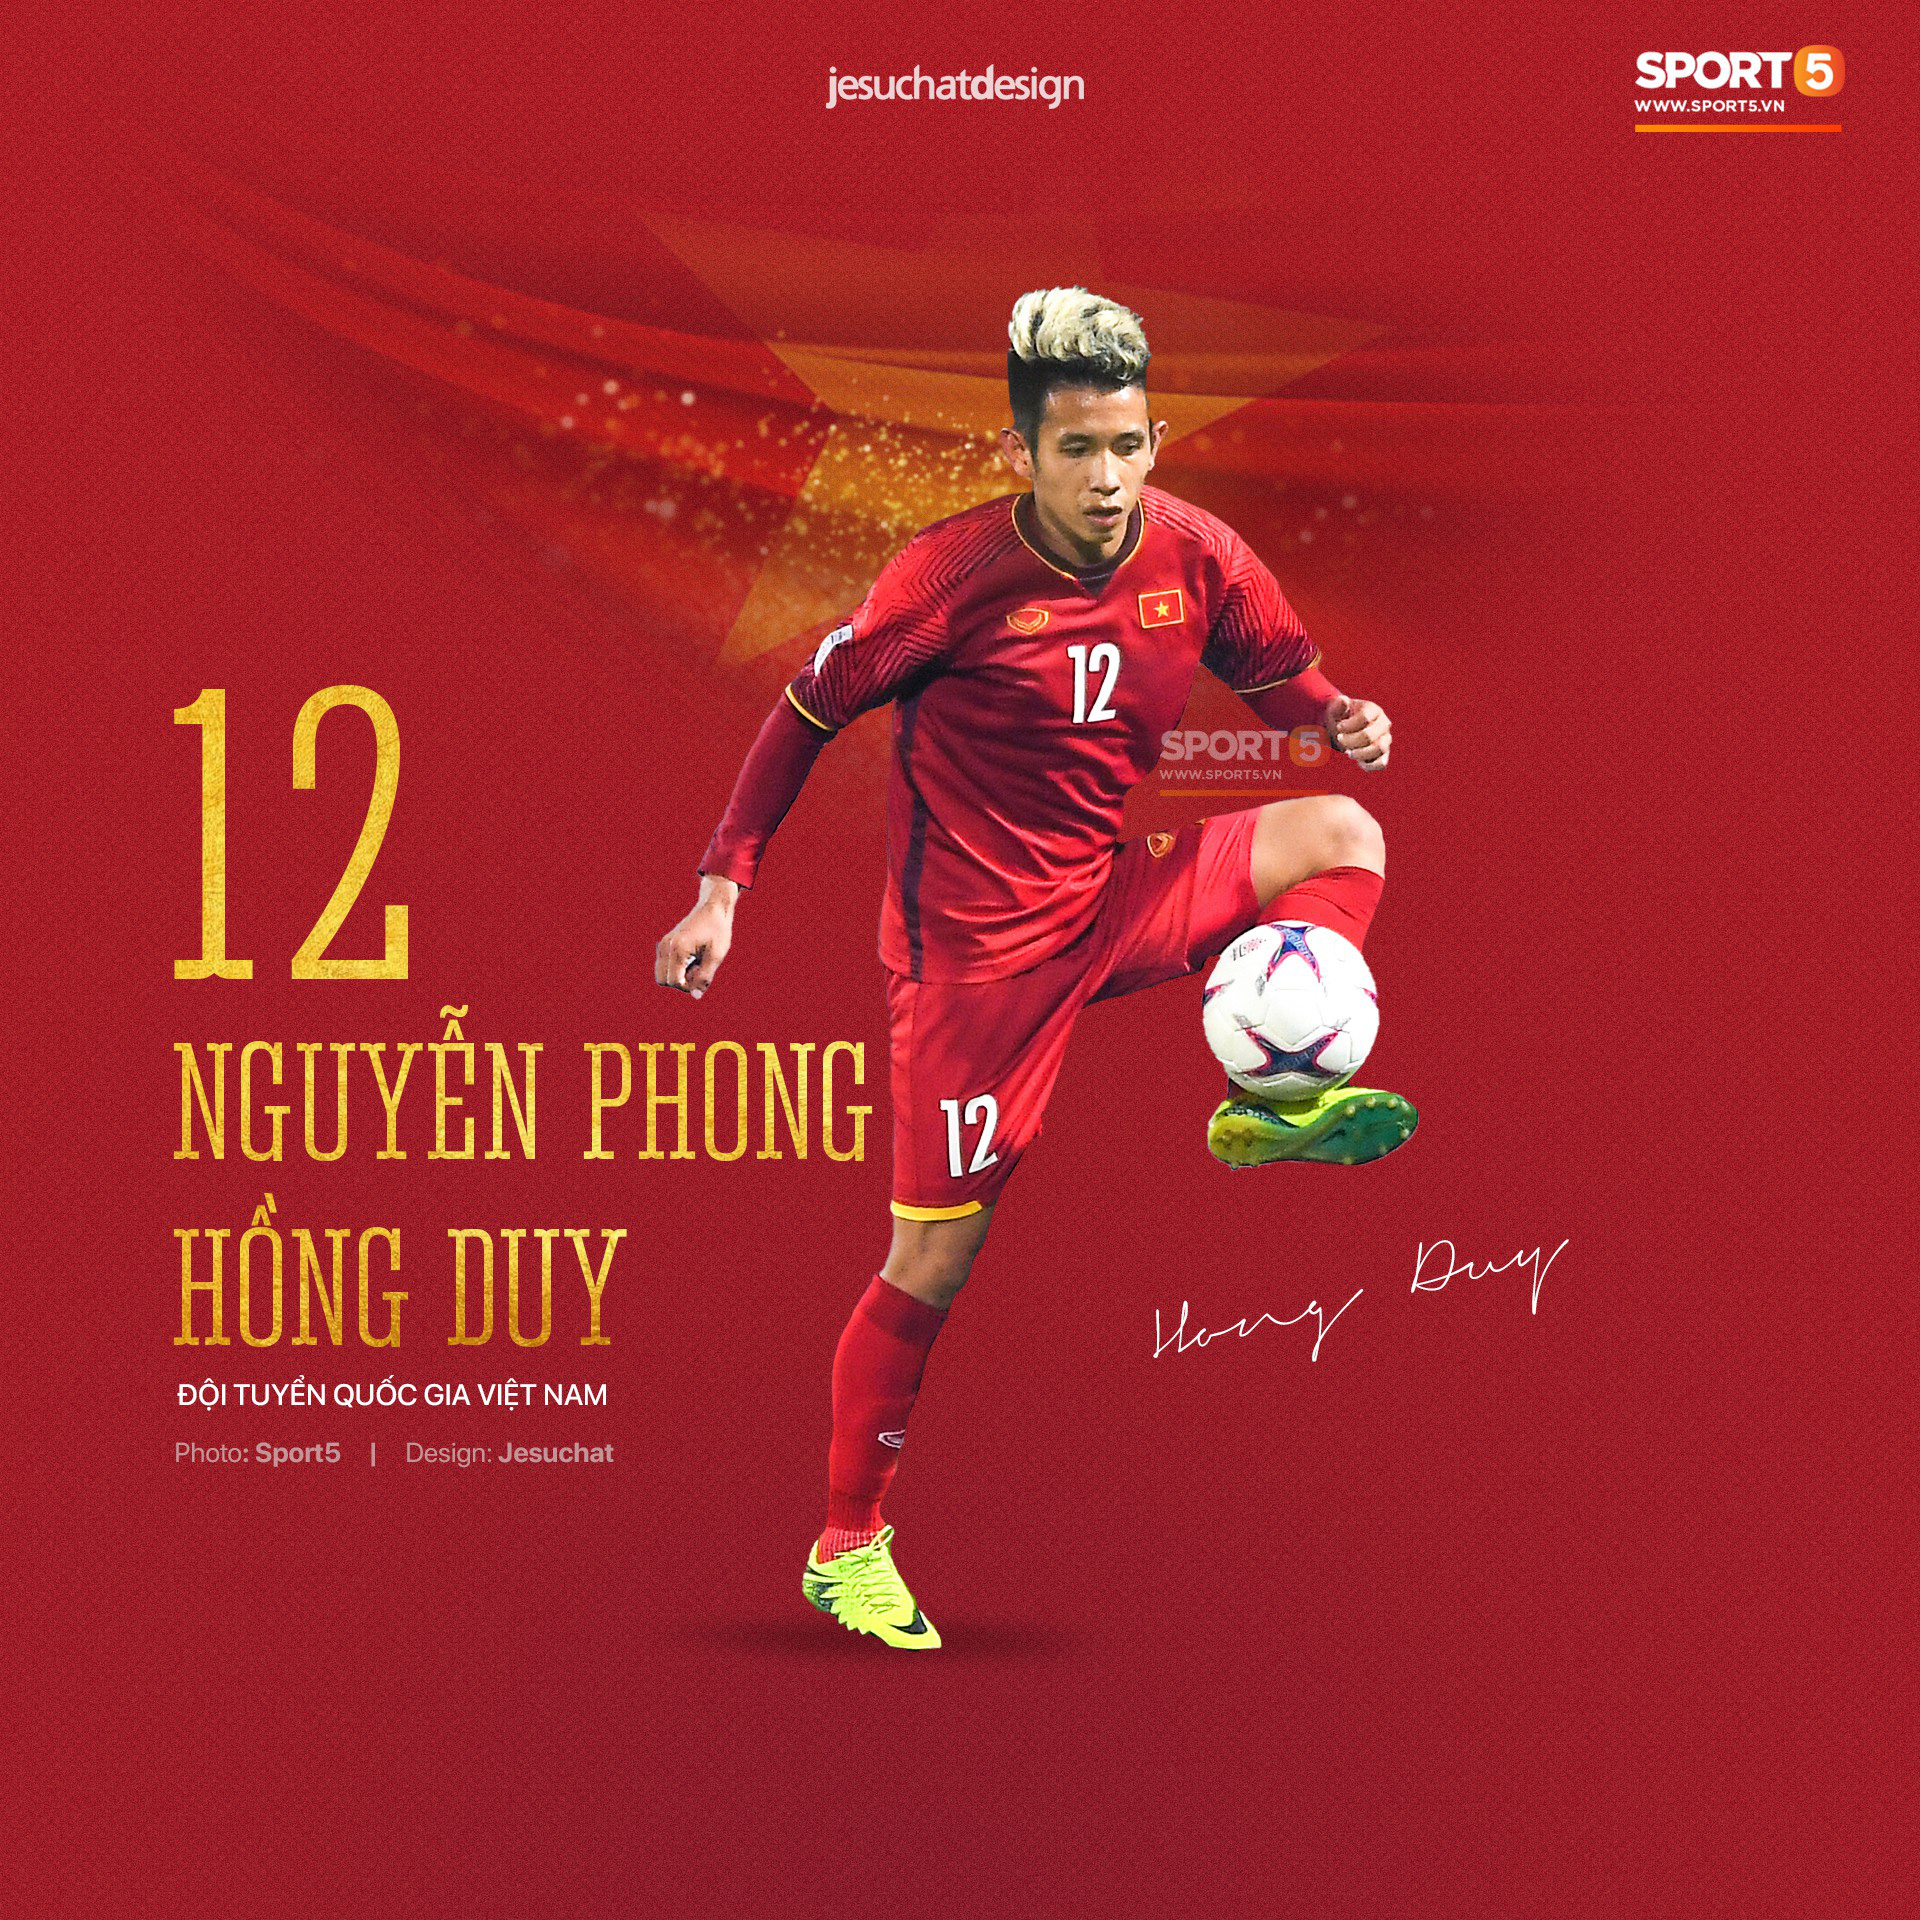 Đội hình cầu thủ Việt tuổi Tý: Chuột gắt gọi tên Duy Mạnh, bất ngờ với chuột già 36 tuổi vẫn đẳng cấp - Ảnh 10.